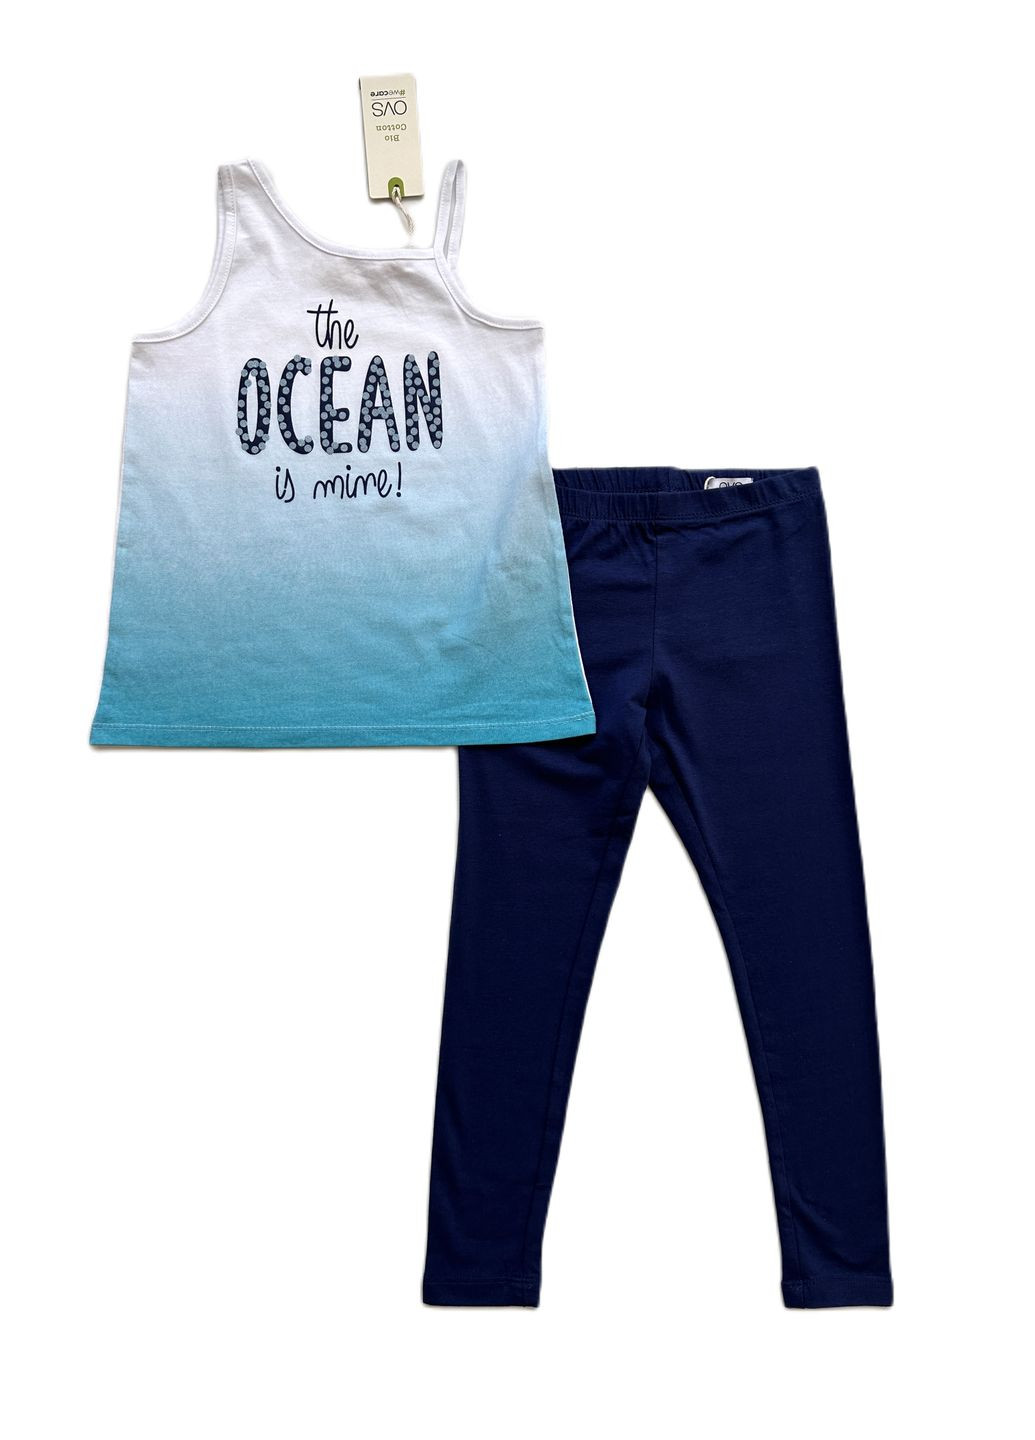 Голубой летний комплект для девочки голубая майка ocean 2000-14 + леггинсы темно-синие трикотажные 2000-16 (110 см) OVS